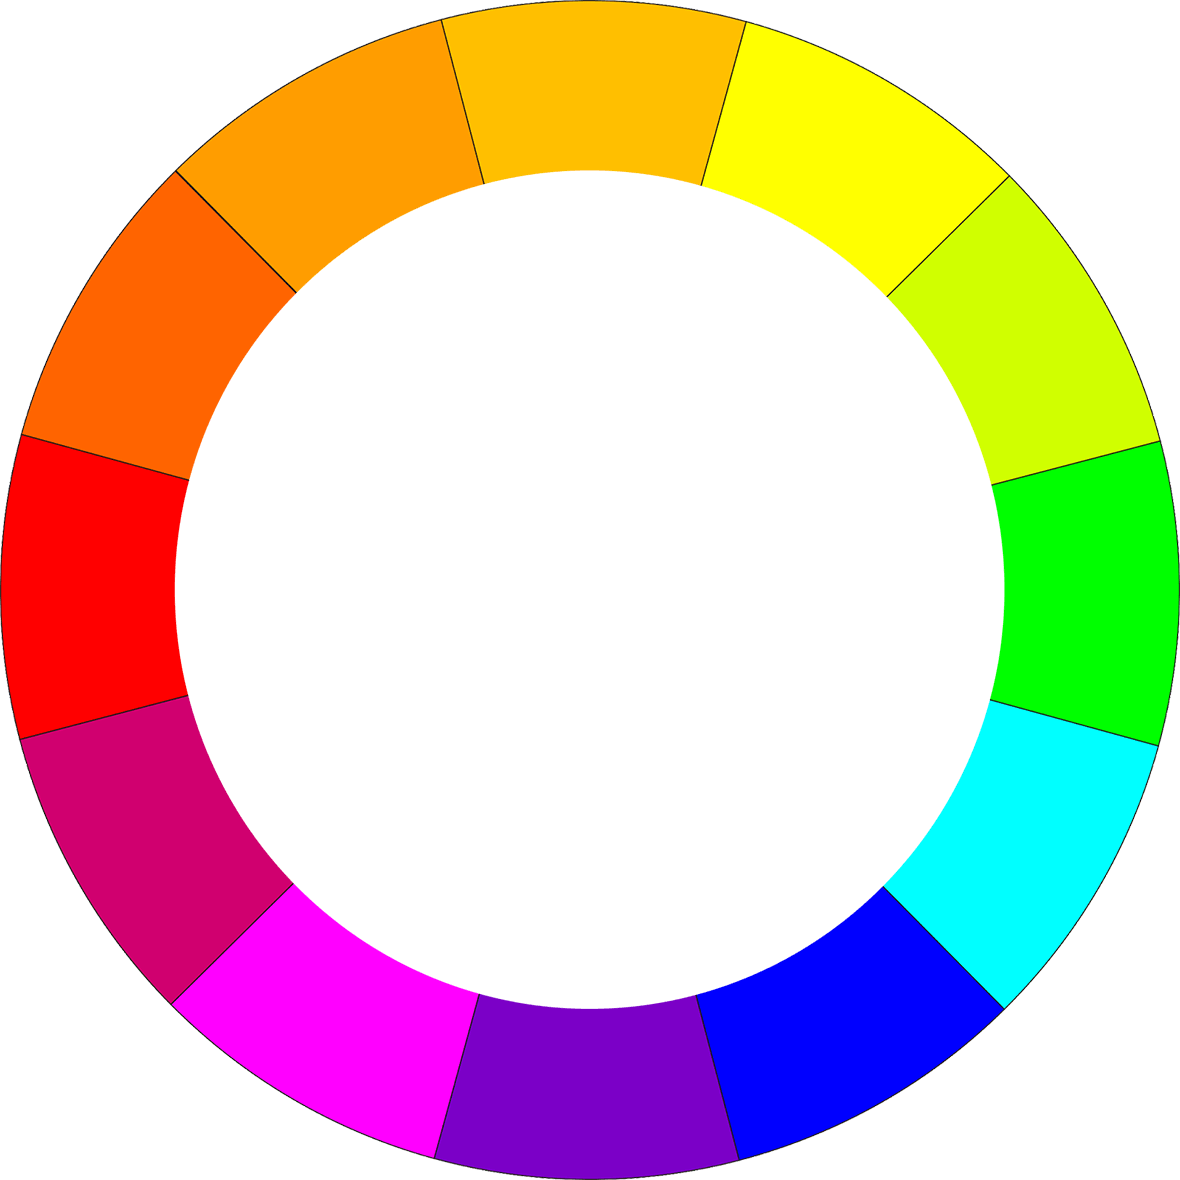 Personalizzare la seduta di Floating colori RGB